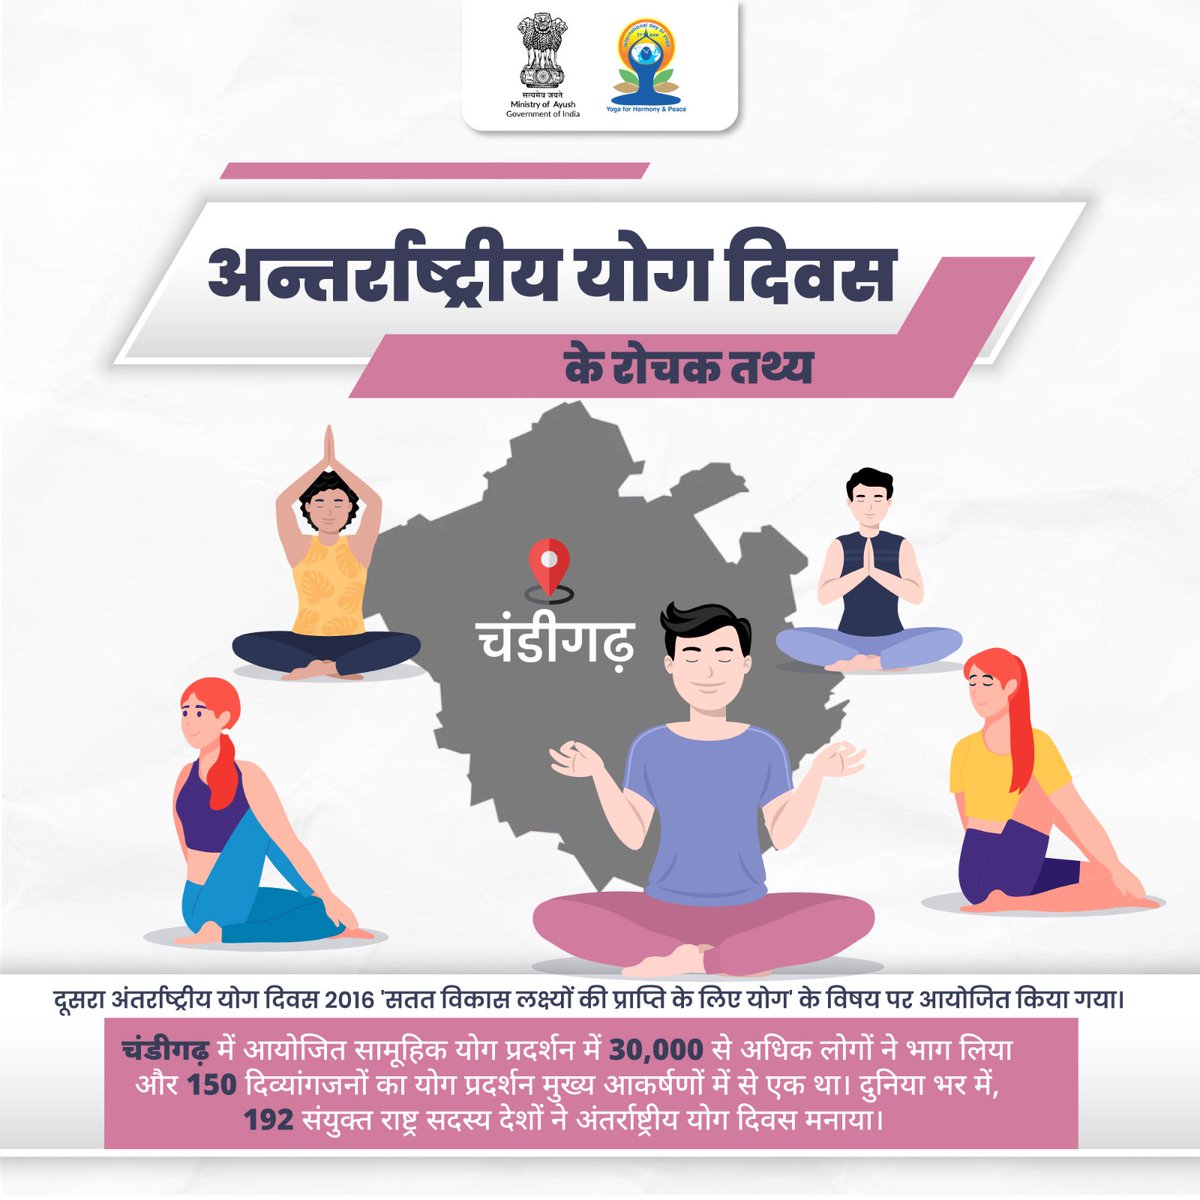 वर्ष 2016 में, दूसरा अंतर्राष्ट्रीय योग दिवस 'सतत विकास लक्ष्यों की प्राप्ति के लिए योग' की थीम पर आधारित था, जो विकास और प्रगति के माध्यम से योग की महत्वपूर्ण भूमिका को उजागर करता है। इस दिन, चंडीगढ़ में आयोजित योग उत्सव में 30,000 से अधिक लोगों ने भाग लिया। 
#IDY2024 #YogaDay